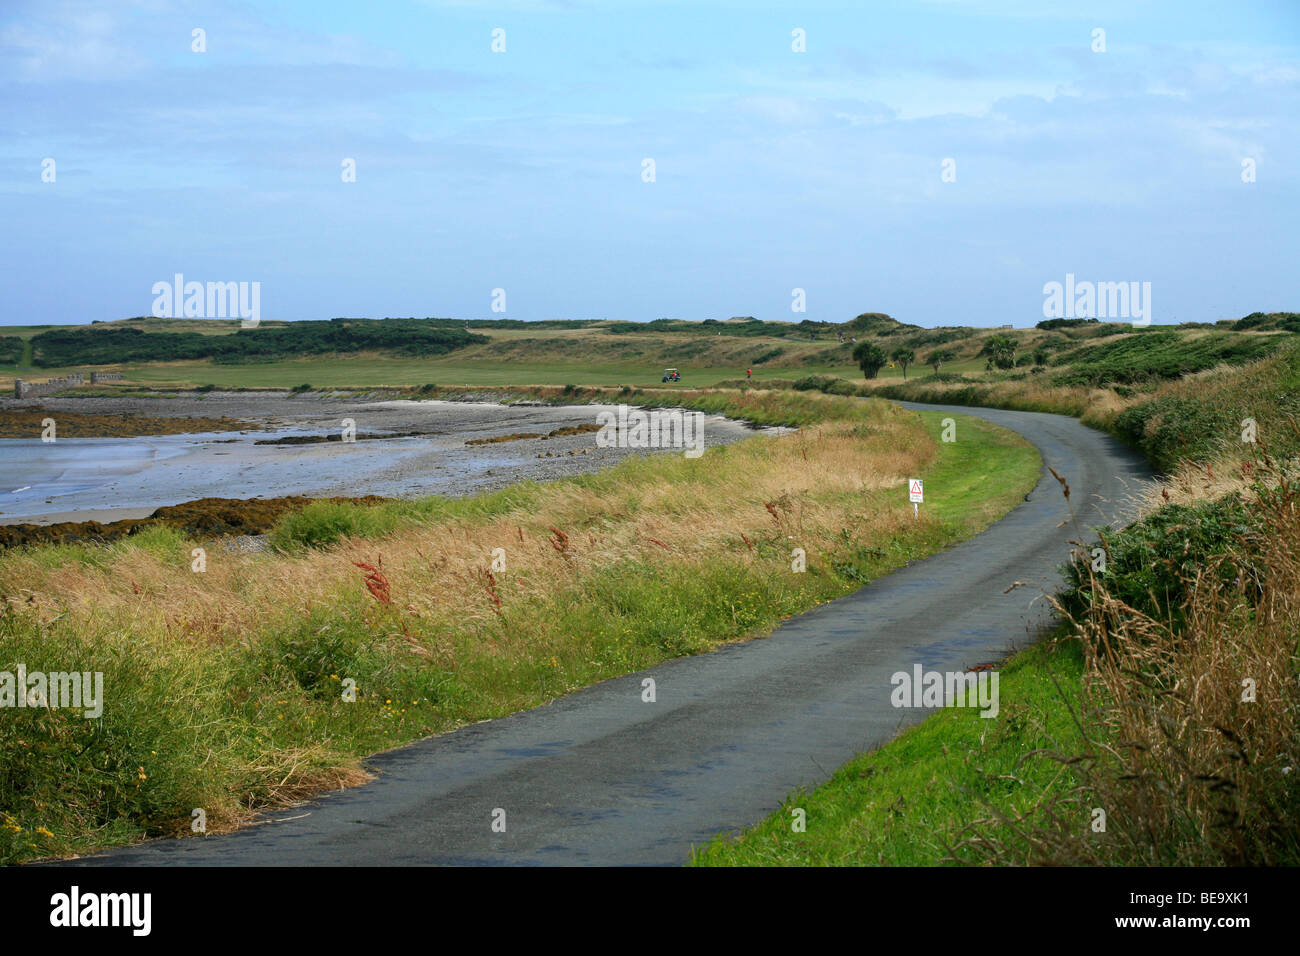 Links golf course situado junto a una bahía arenosa con figuras distantes Foto de stock